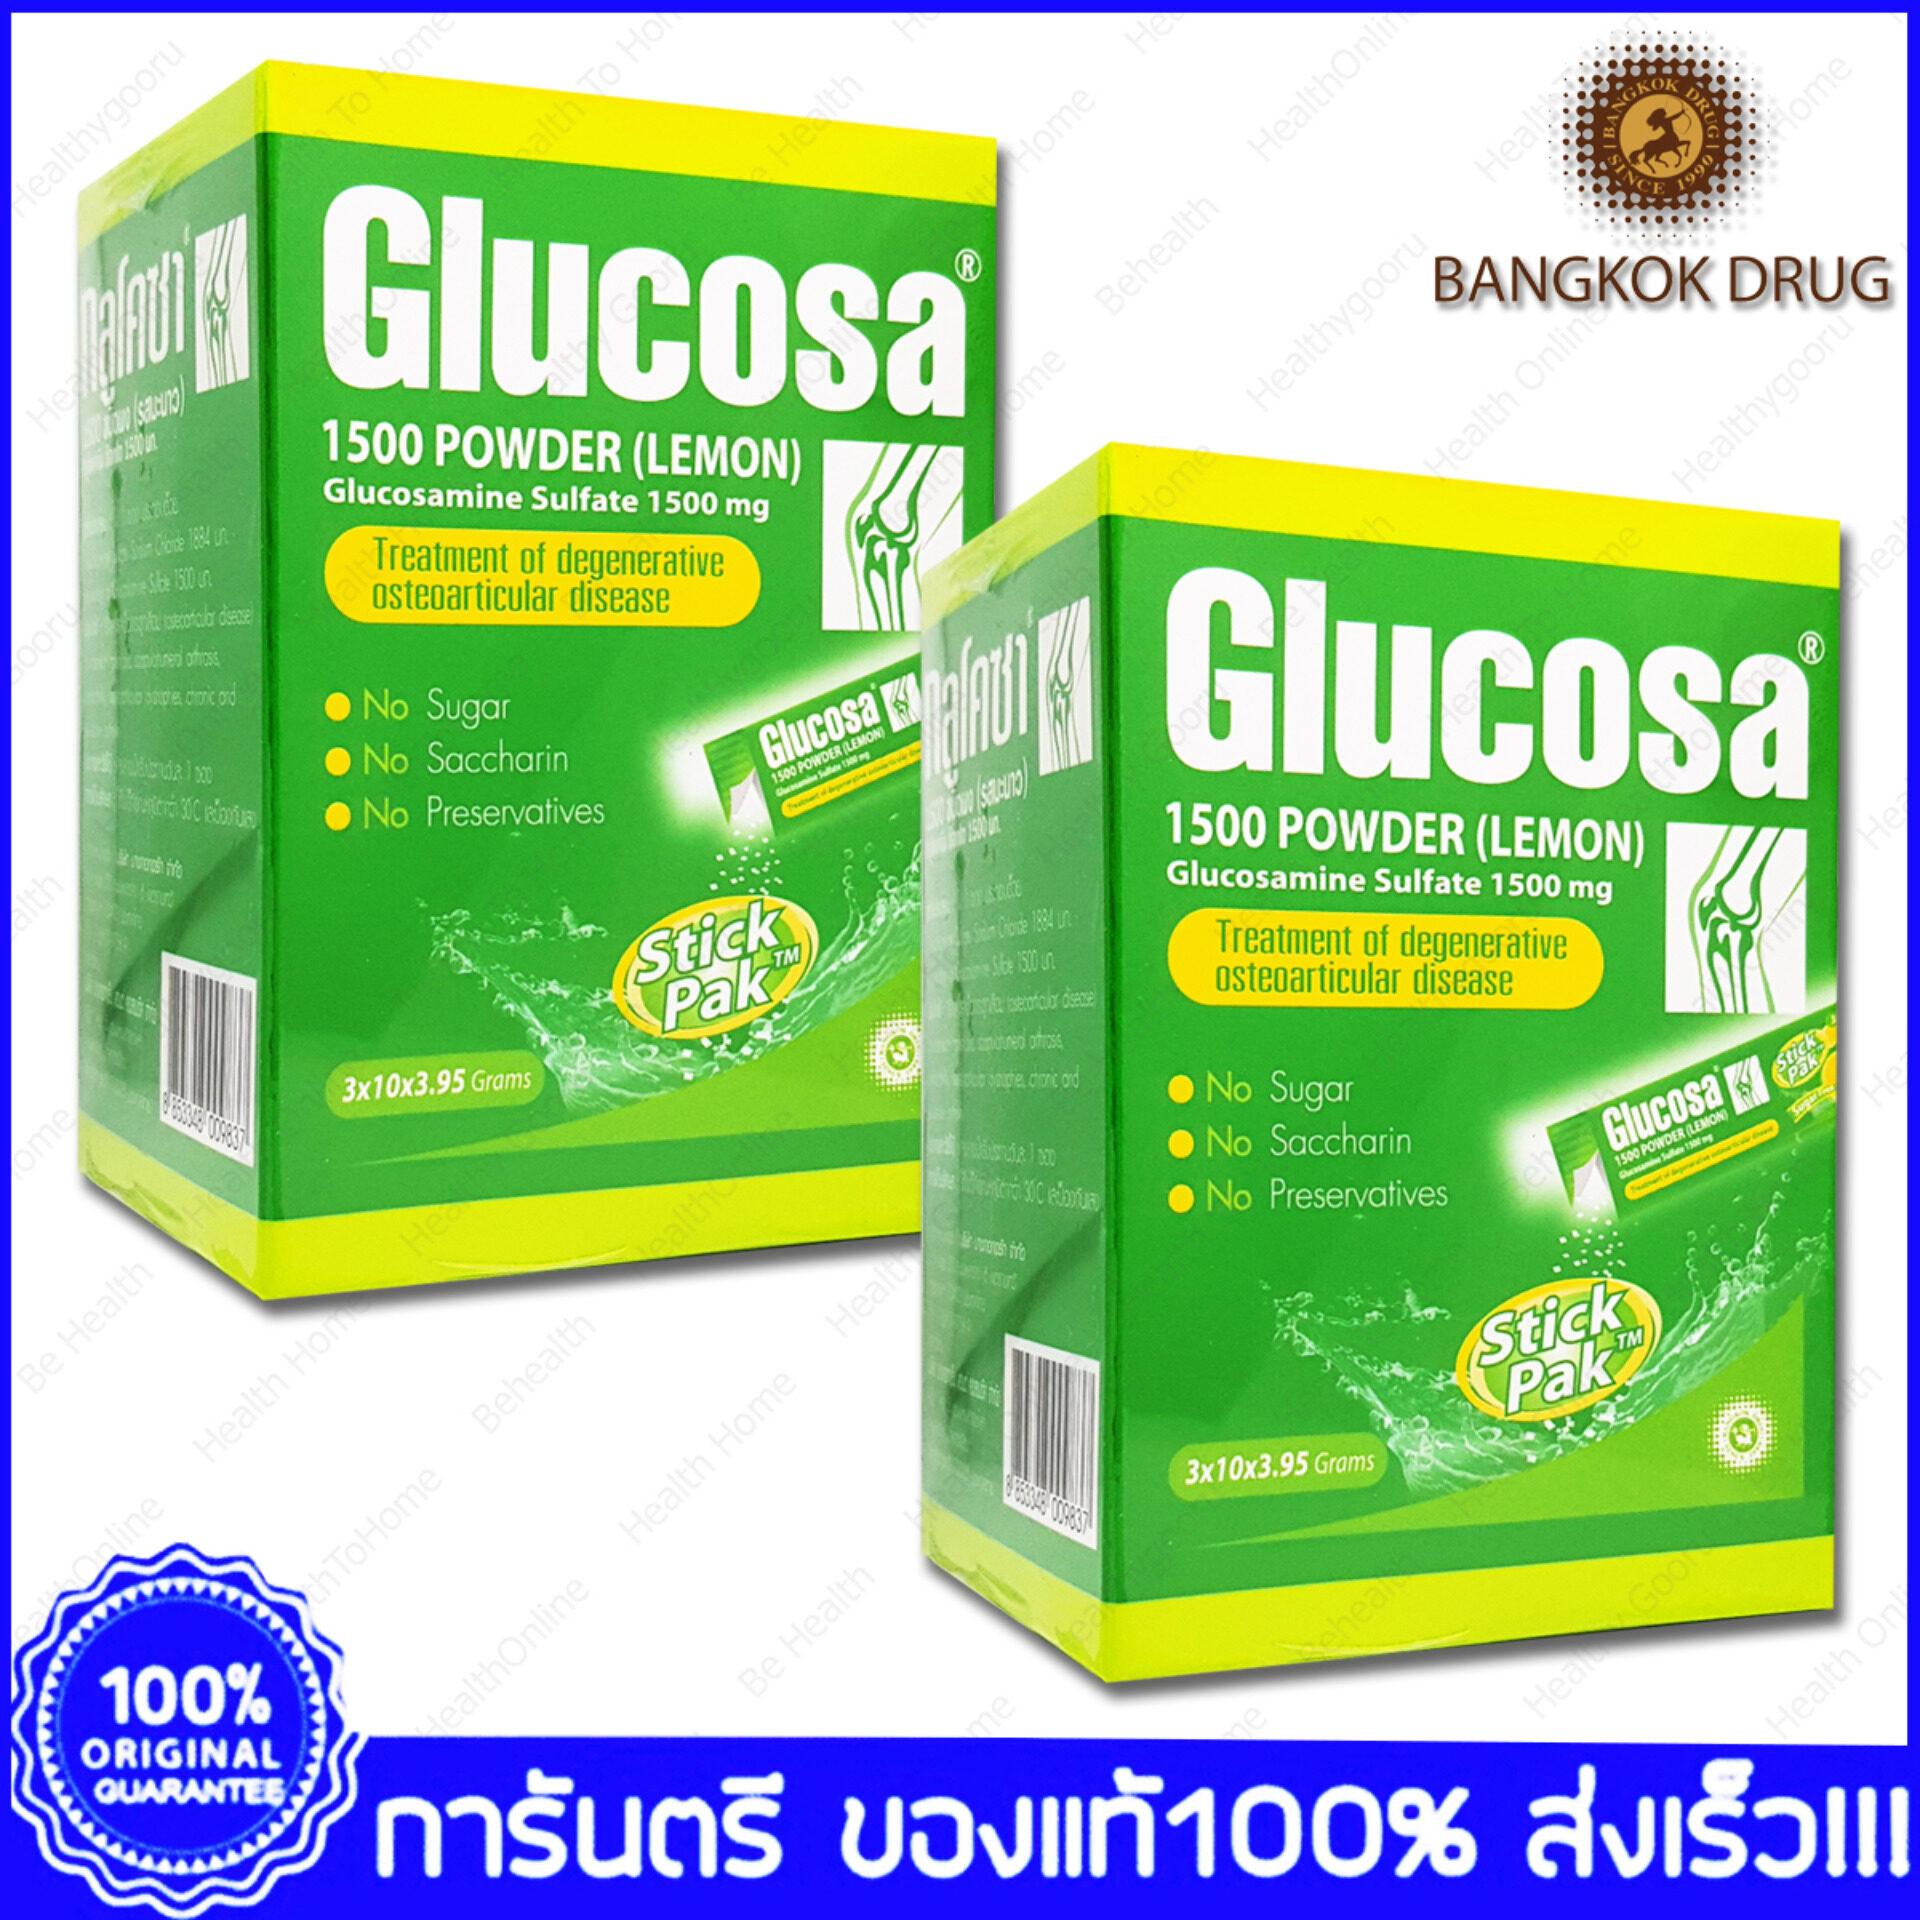 Glucosa Powder Lemon Stick Pak Glucosamine กลูโคซา แบบชง รสมะนาว ปวดข้อ ปวดเข่า ข้อเข่าเสื่อม เพิ่มน้ำเลี้ยงข้อเข่า 1500mg 30ซอง(Sachets) X 2 กล่อง(Boxs)